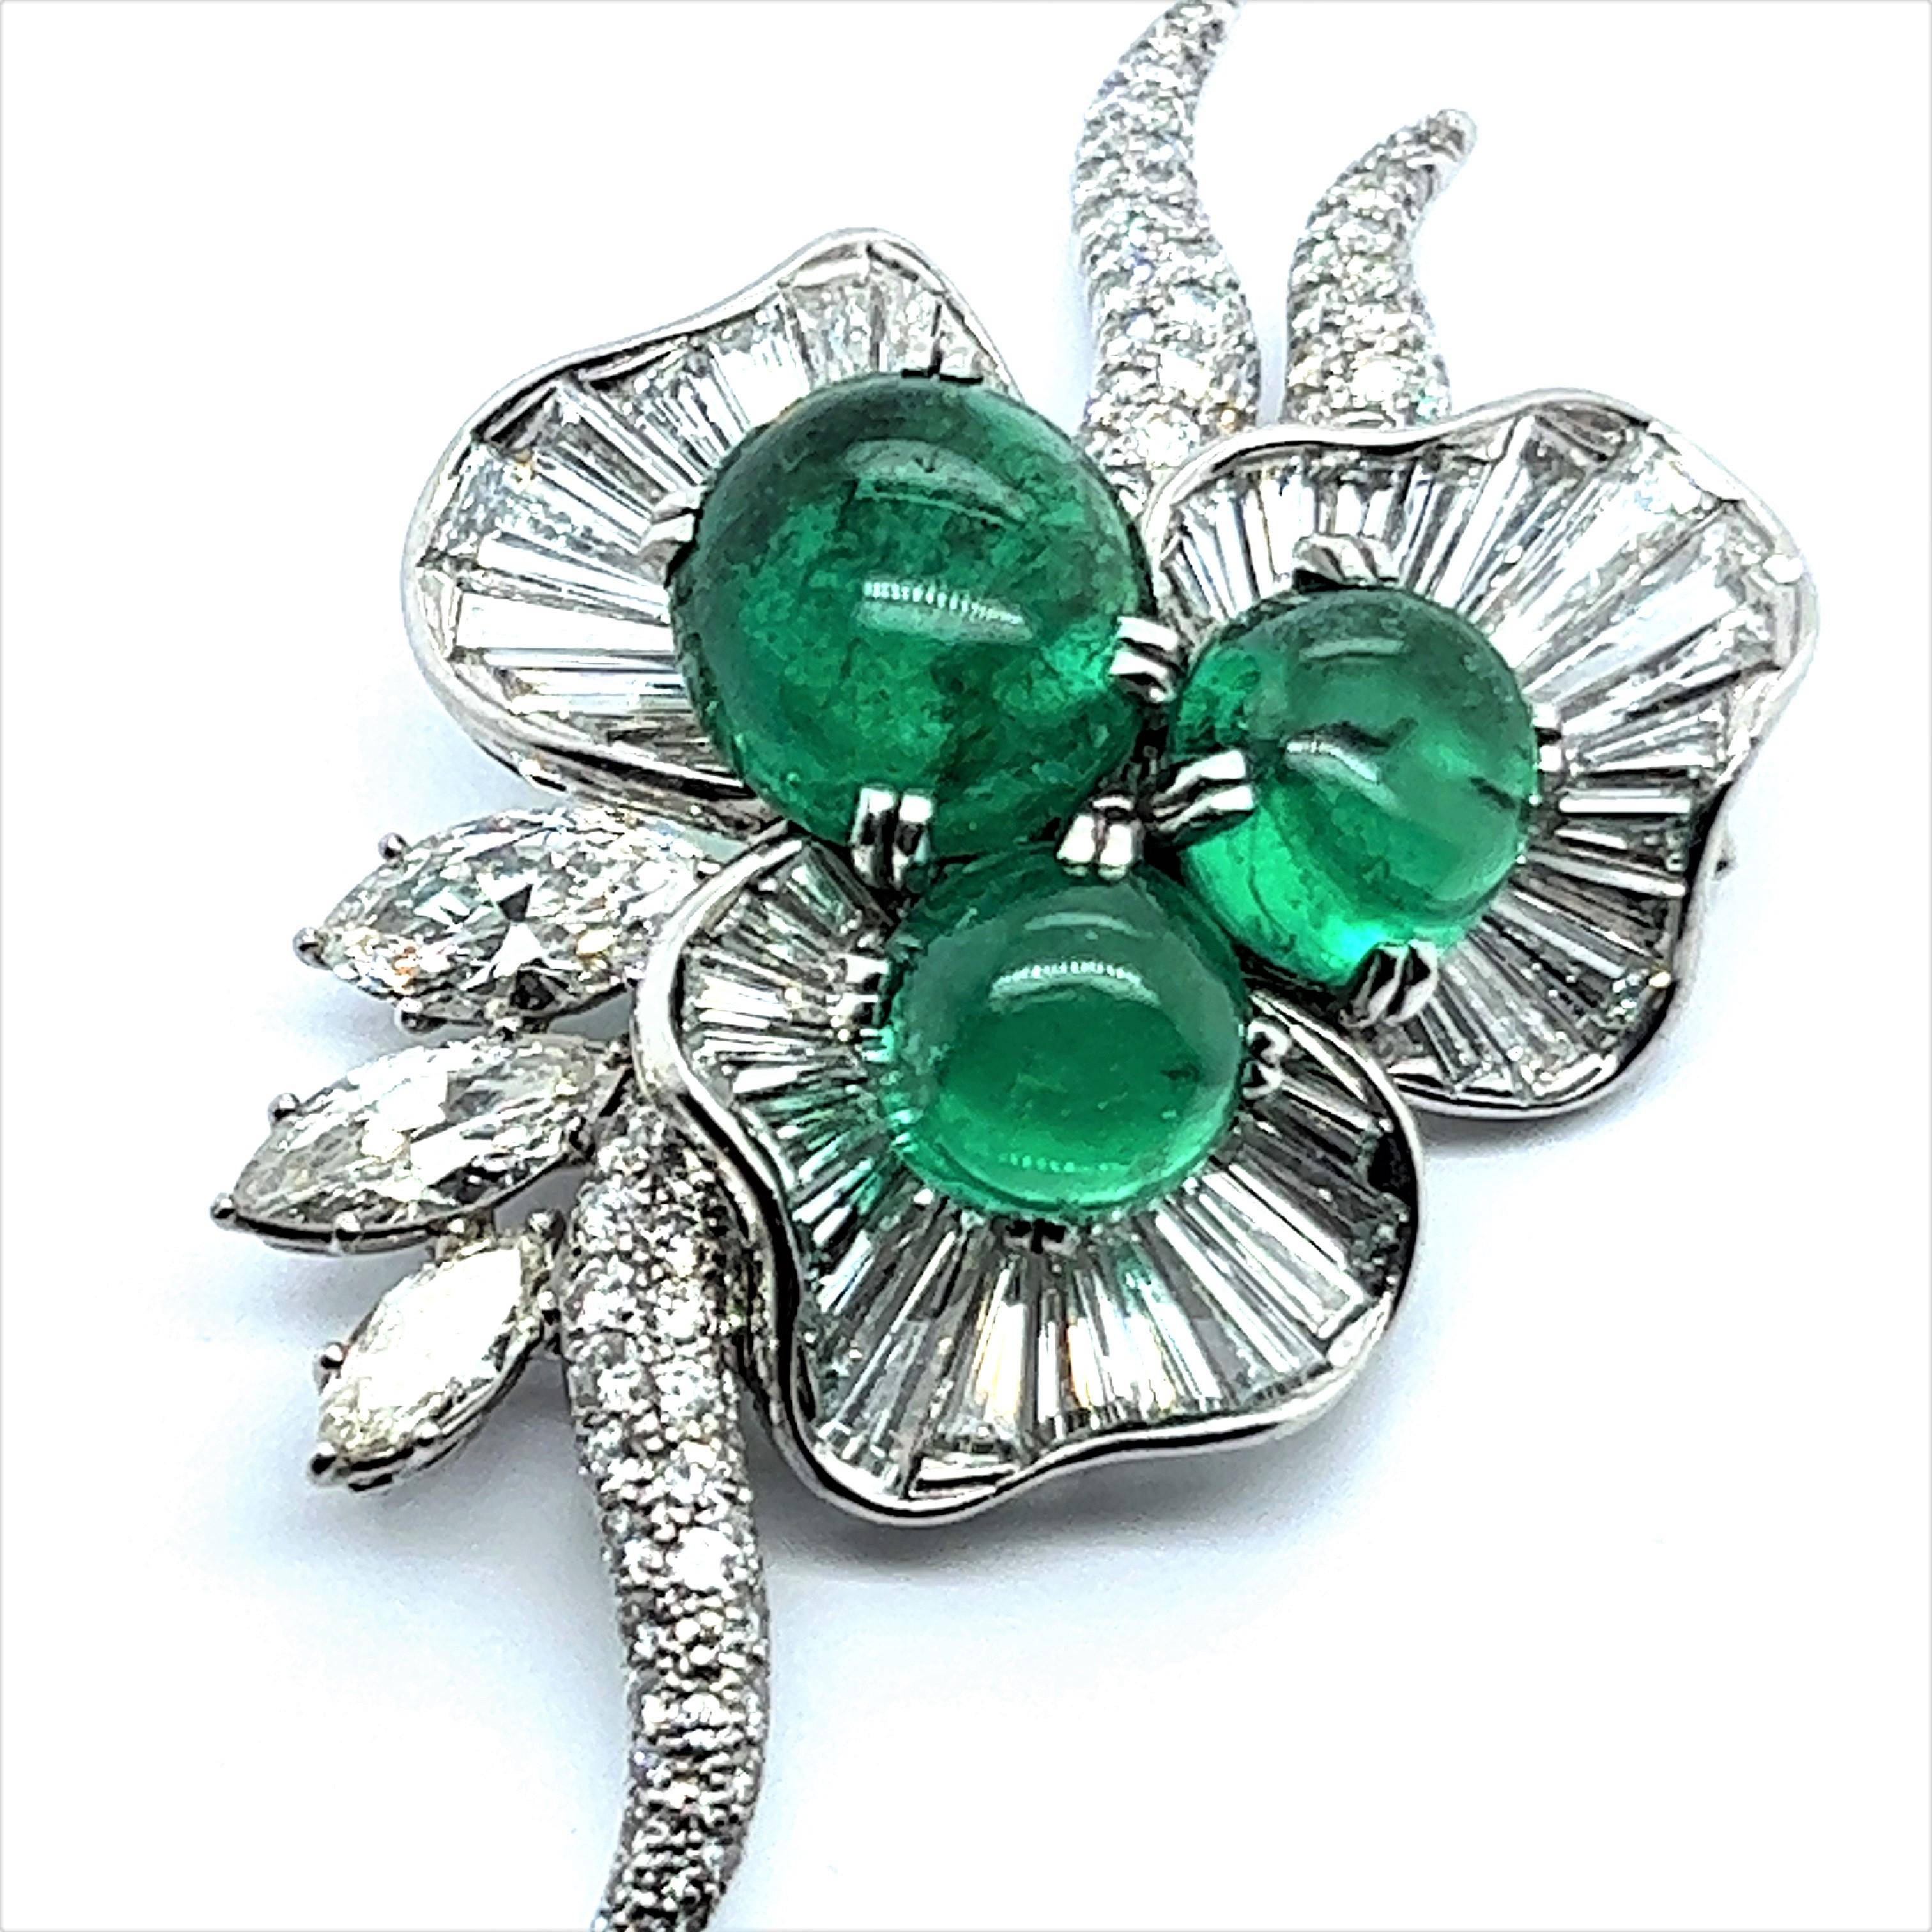 Der Smaragd hat eine der längsten Geschichten und die größte Anerkennung aller Edelsteine im Laufe der Jahrhunderte. Sie sind seit den Tagen des alten Ägyptens bekannt und werden seit Hunderten von Jahren von Königen, Königinnen und den höchsten